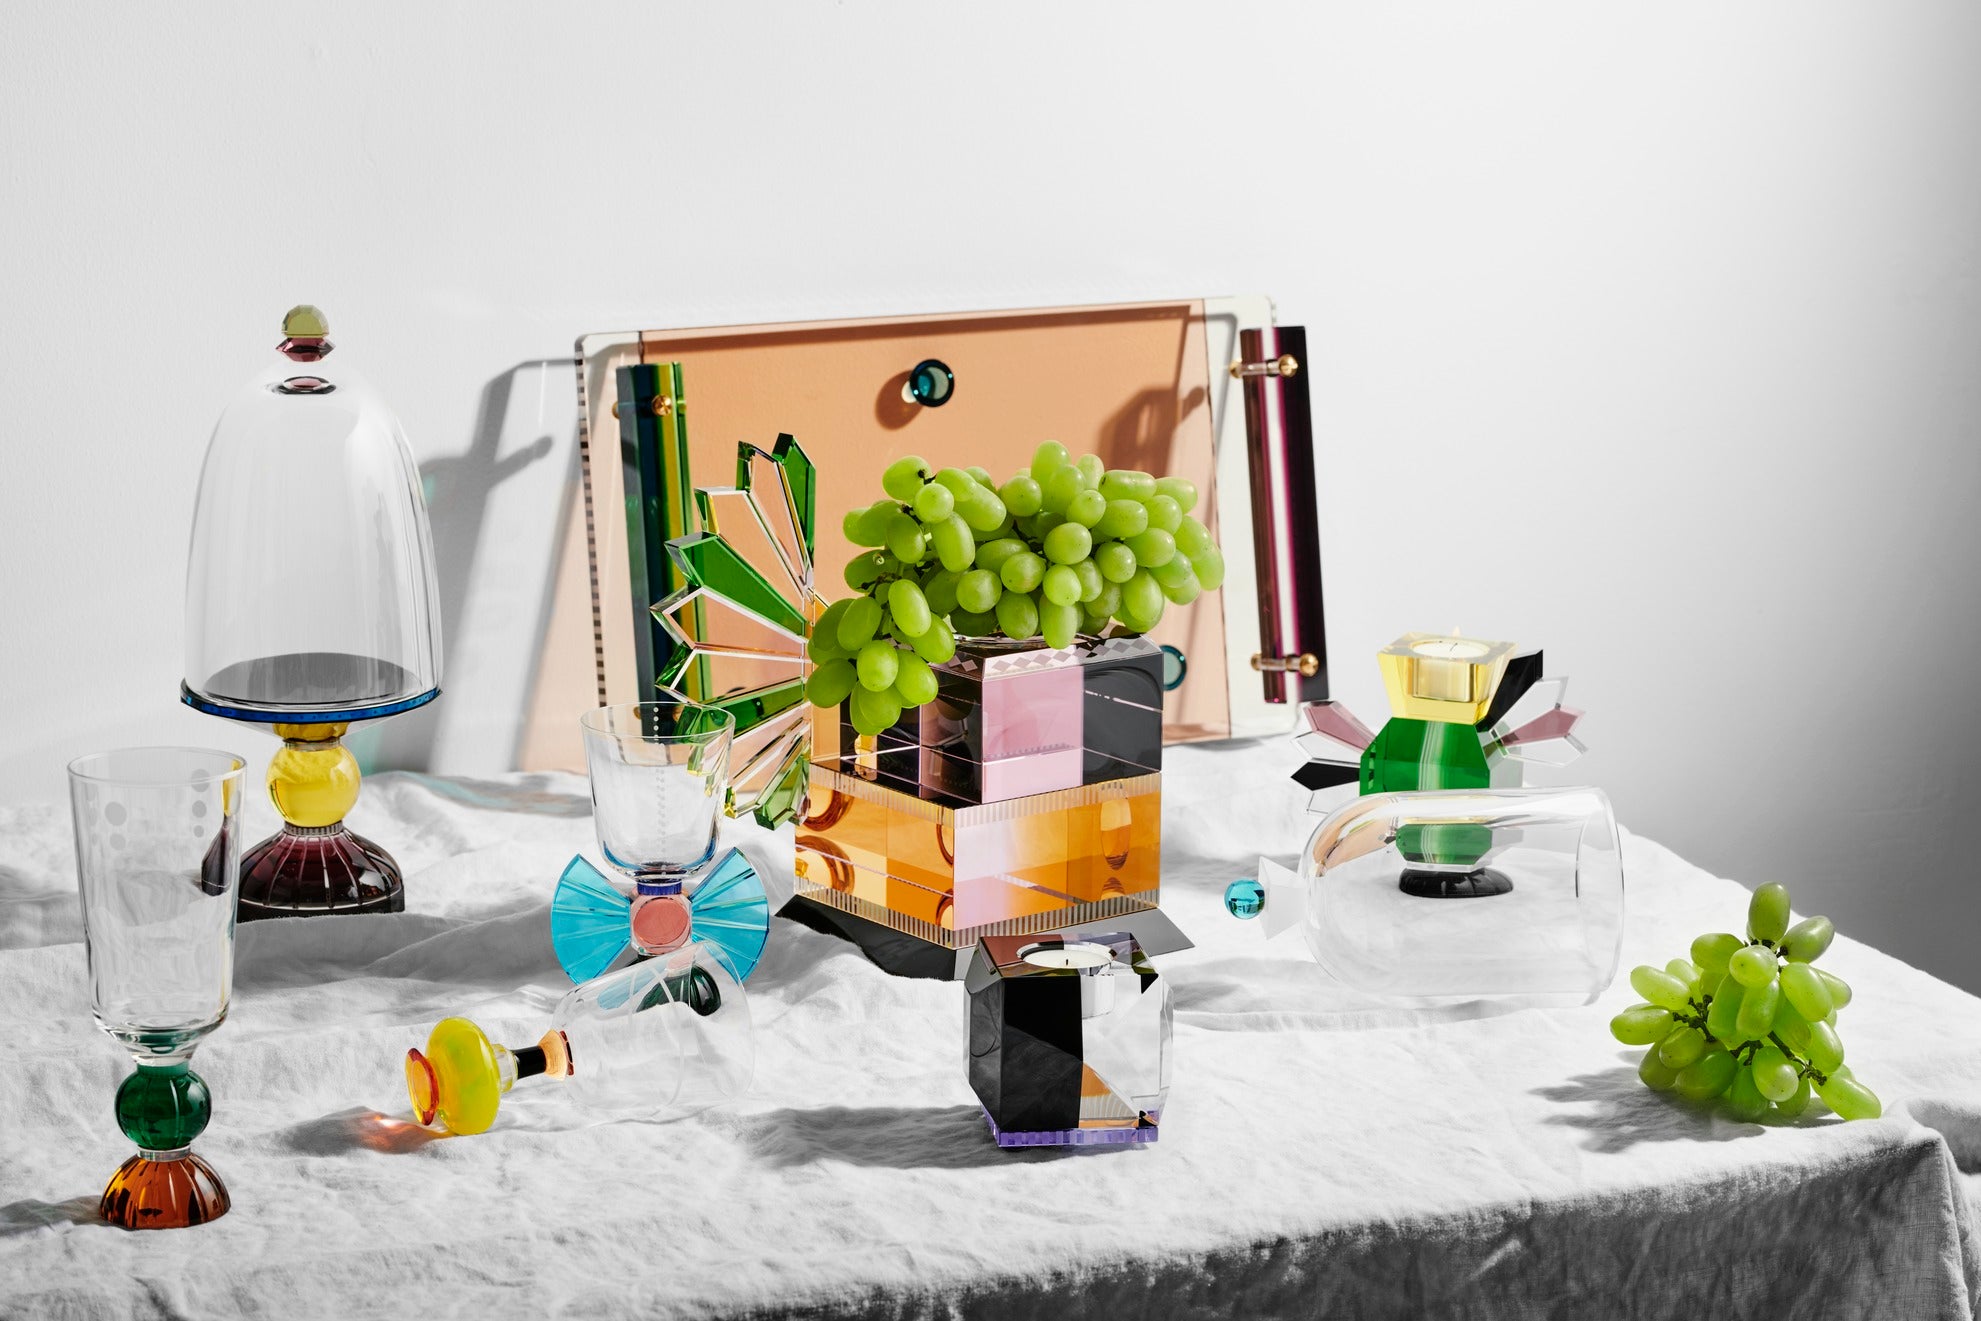 Opstilling af forskellige lysestager, glas  og skåle i farvet krystal, på middagsbord med dug og frugt.